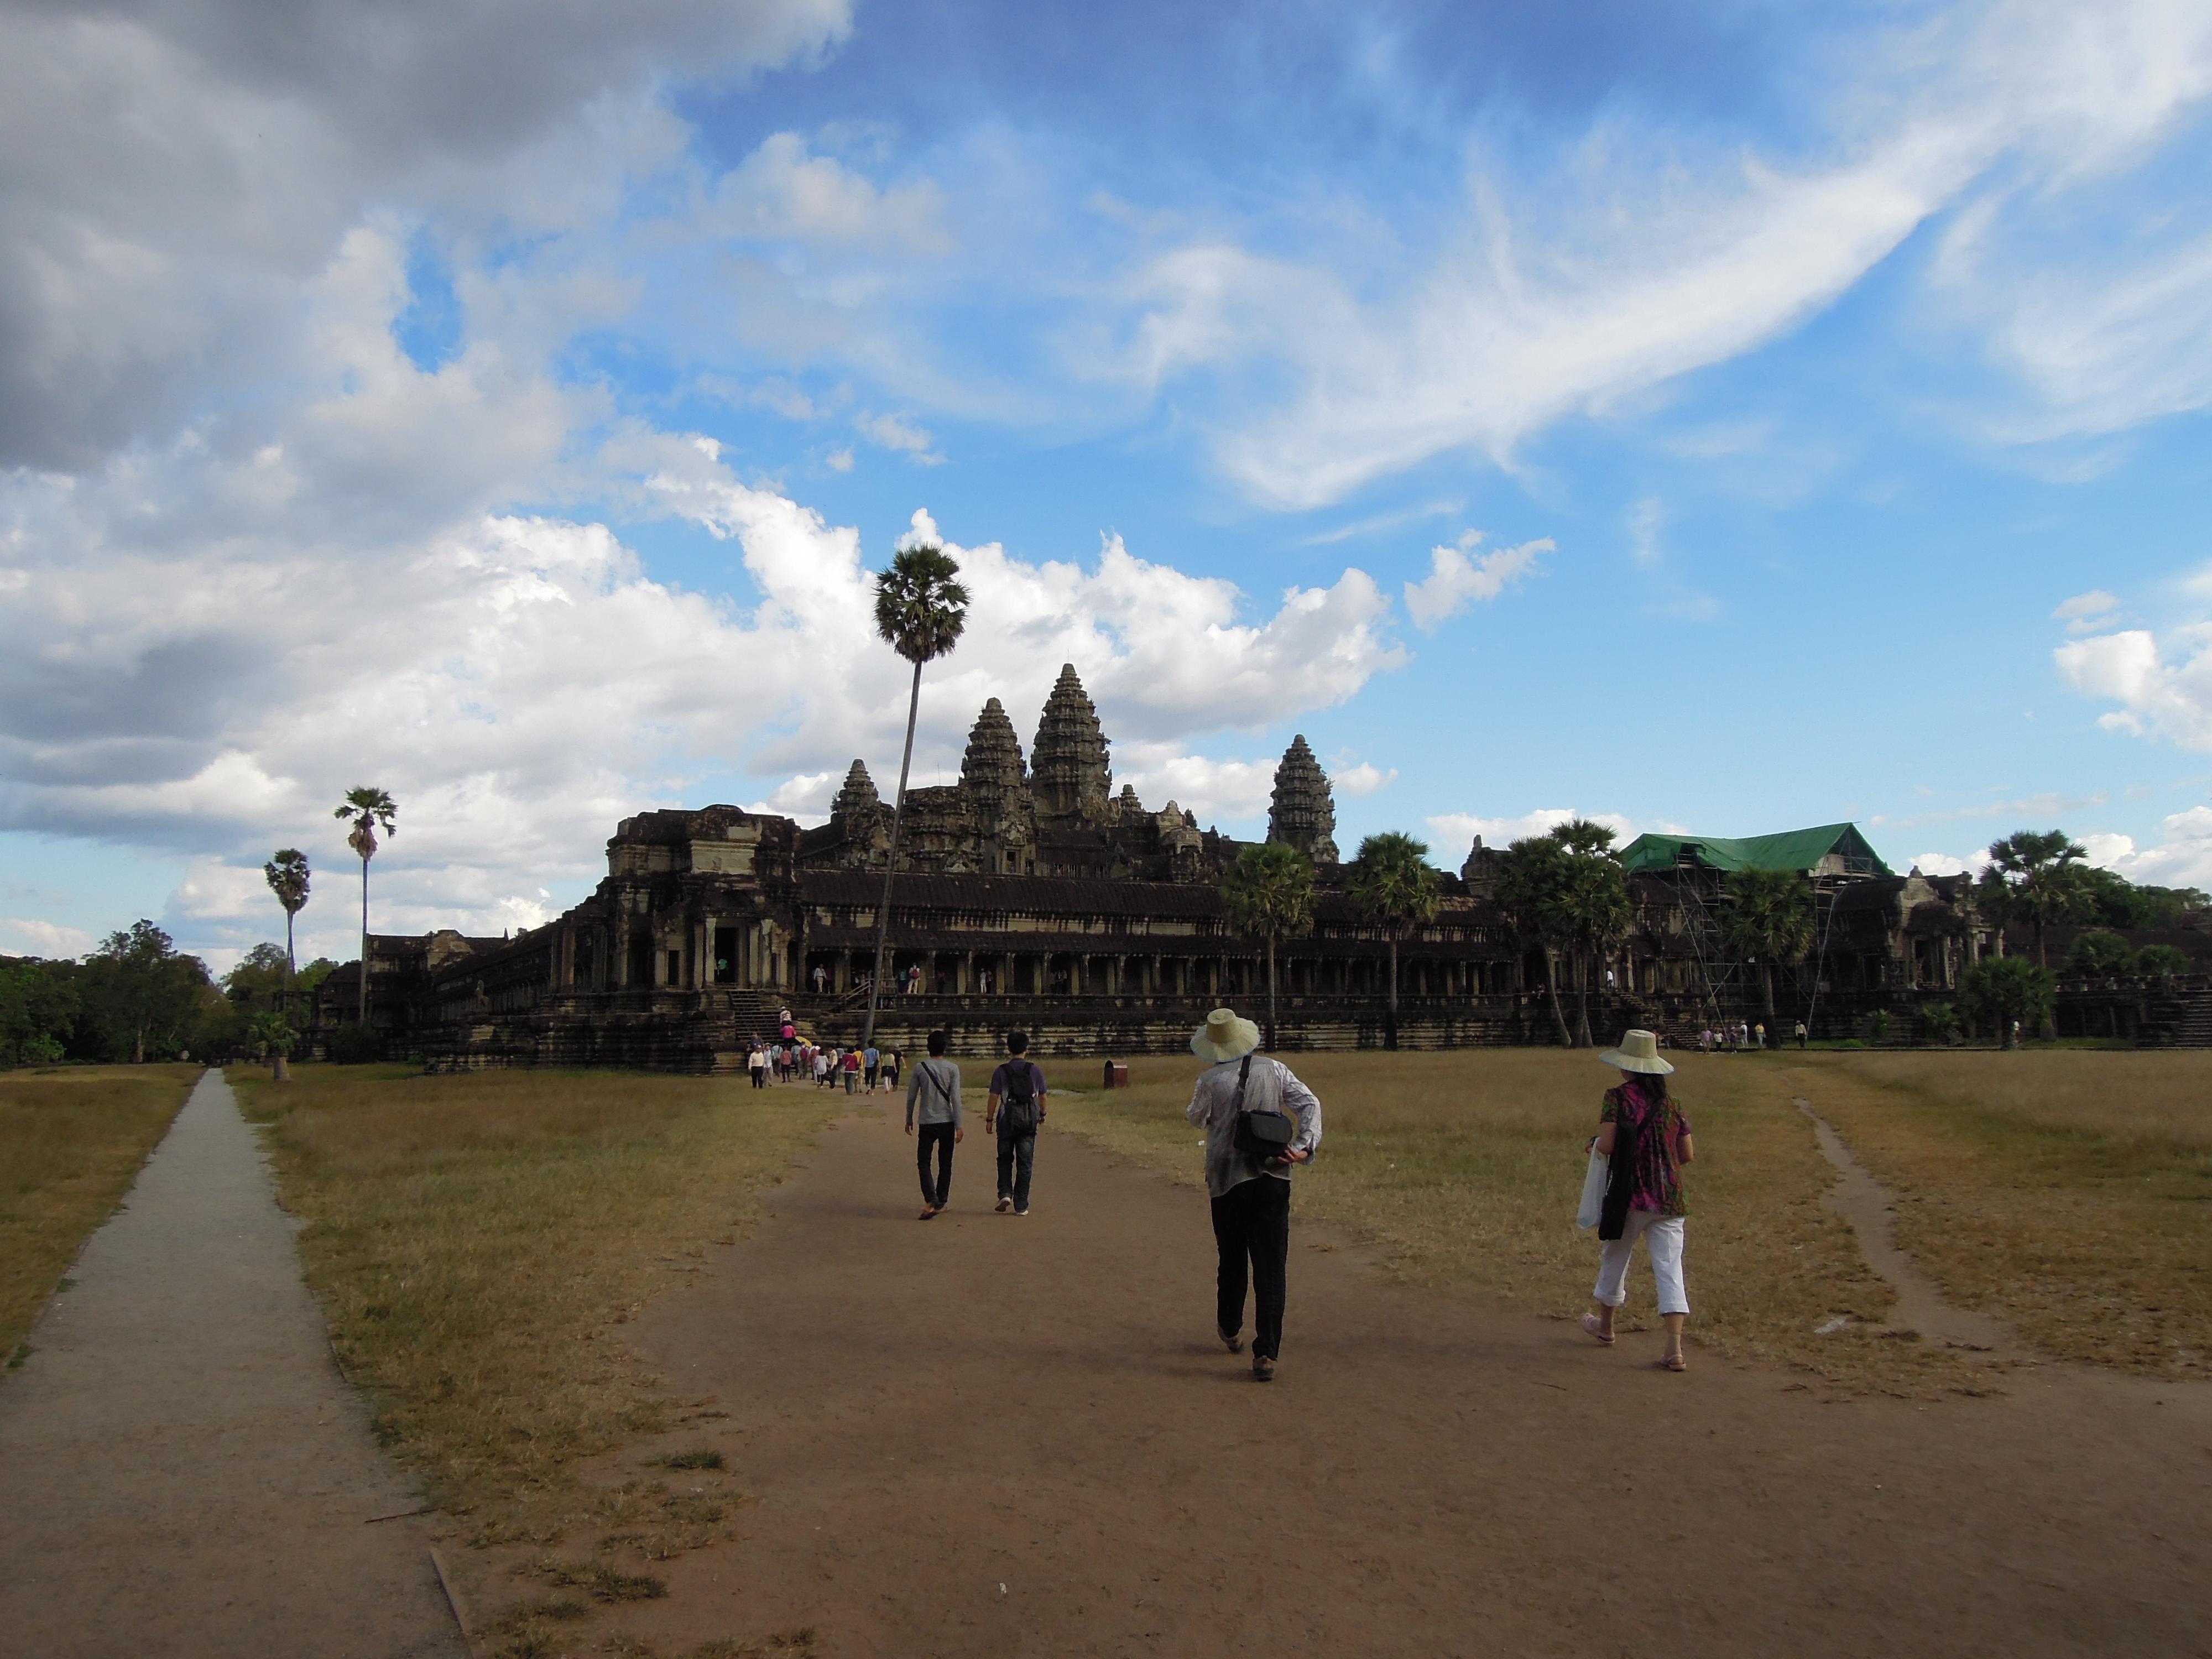 Angkor Wat, XIII w. Jak twierdzą niektórzy uczeni, zbudowana z przeznaczeniem na miejsce pochówku potężnego króla Suryavarmana II. Dedykowana bogu Vishnu, fot. M. Lehrmann